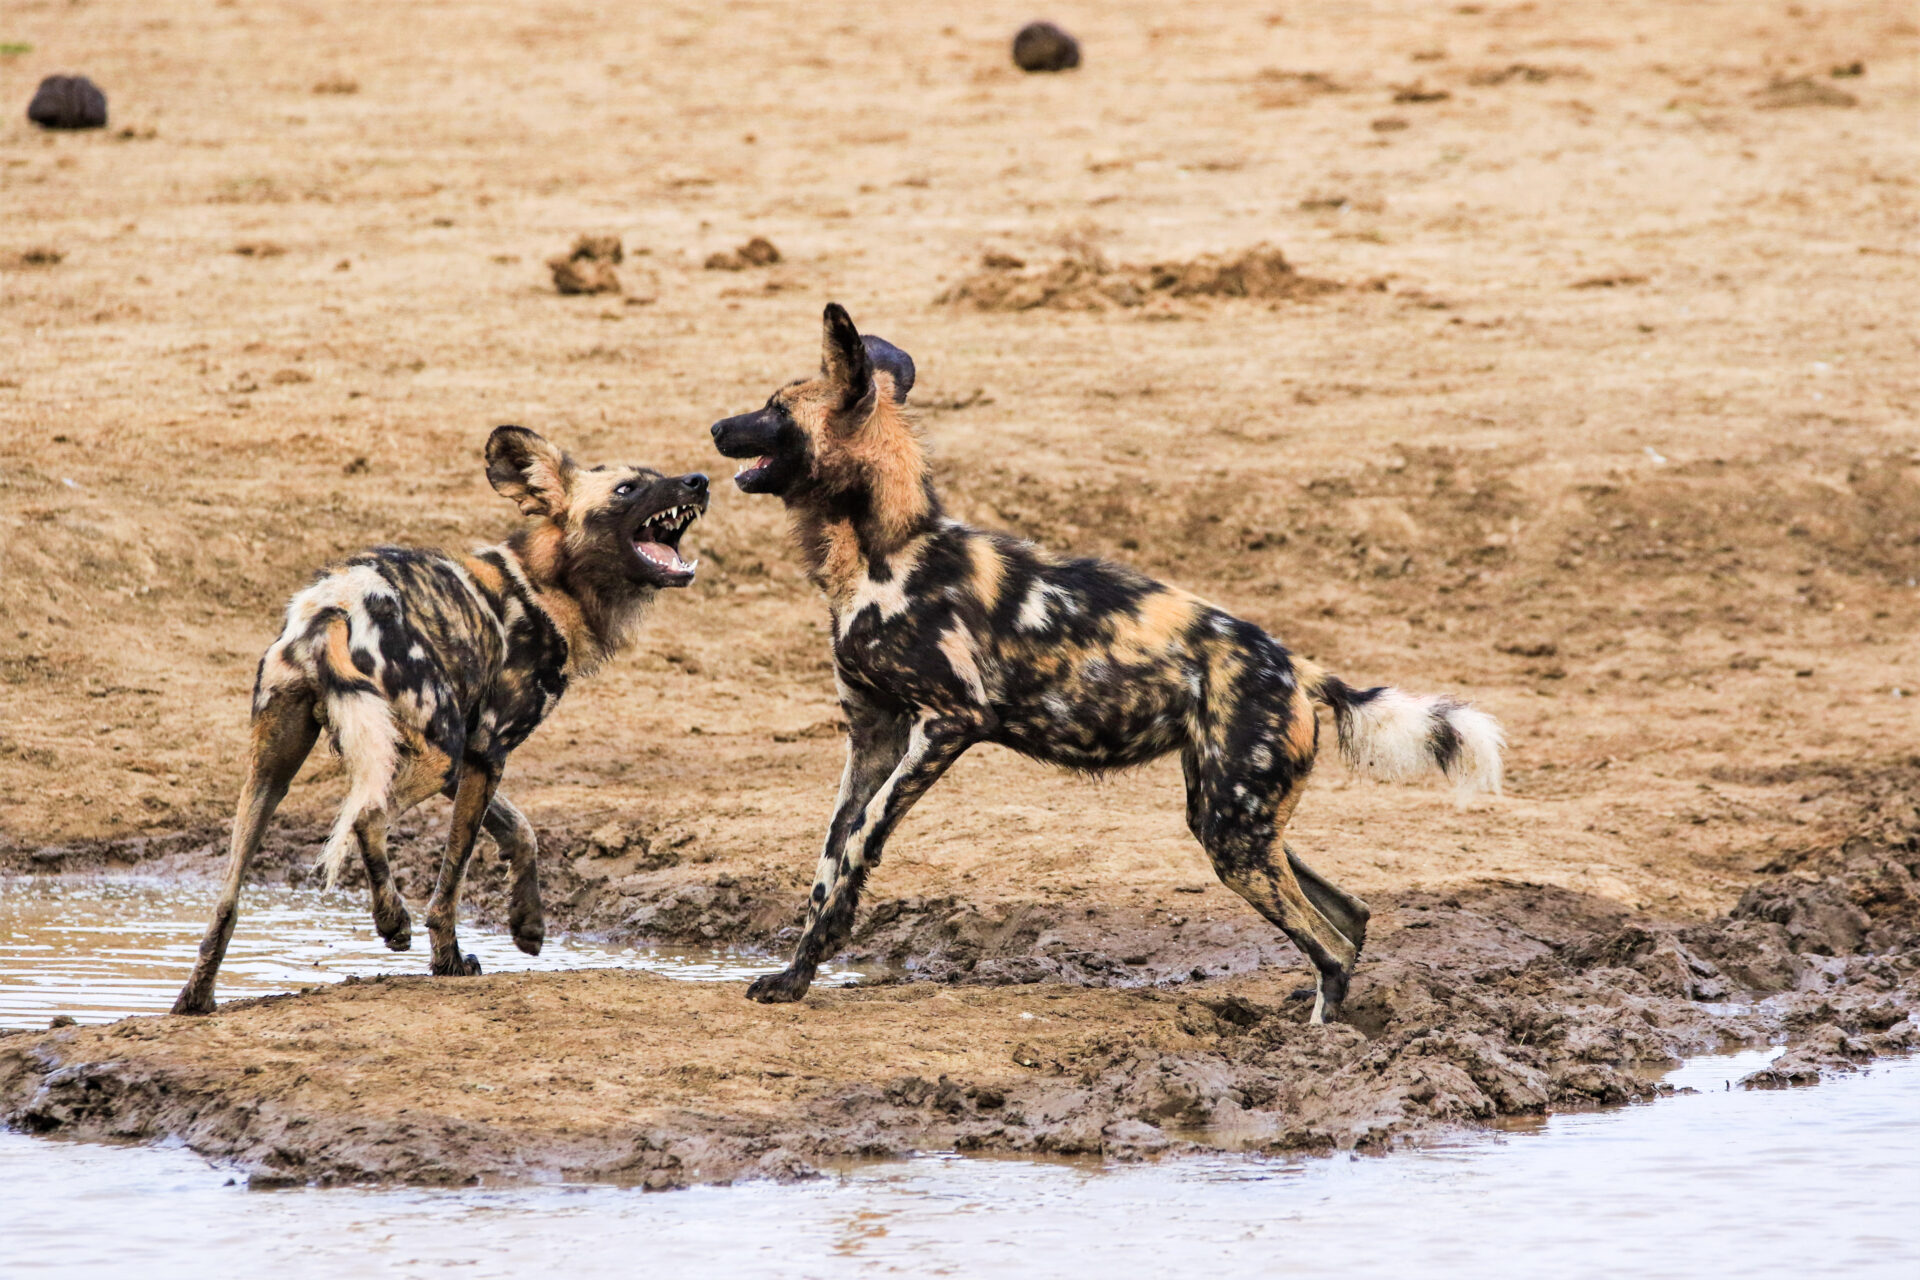 Wilddogs playing in rockfig safari lodge